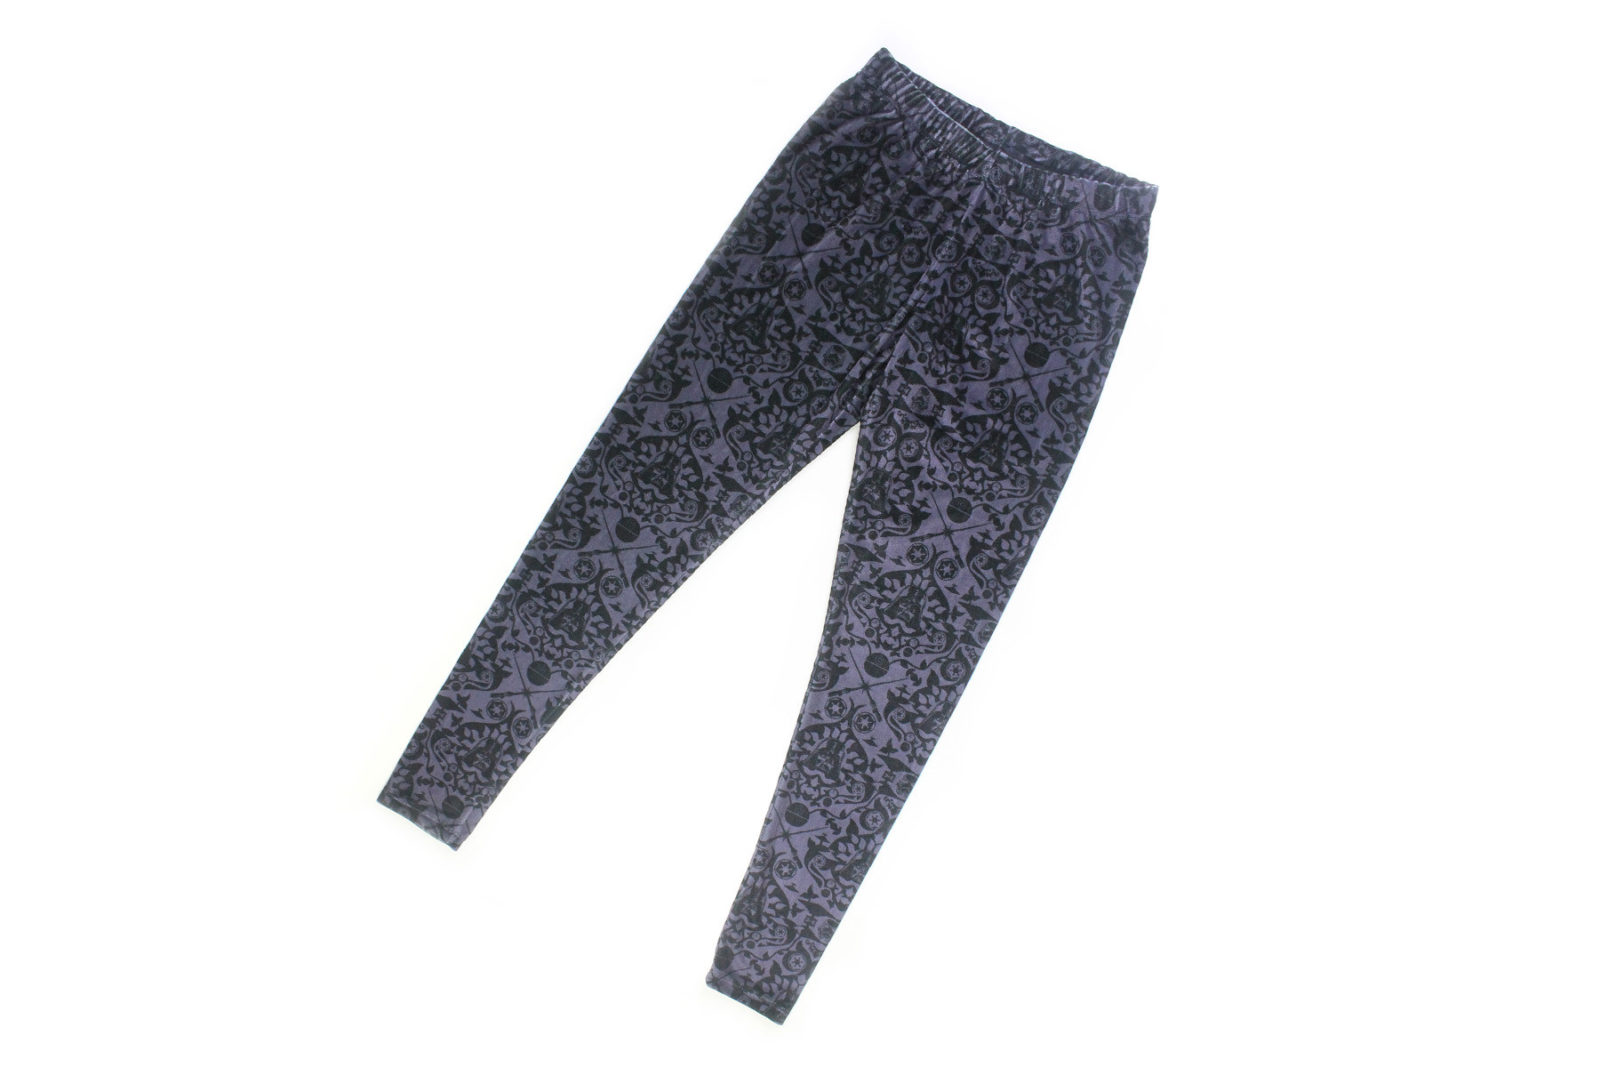 Review – Tapestry leggings